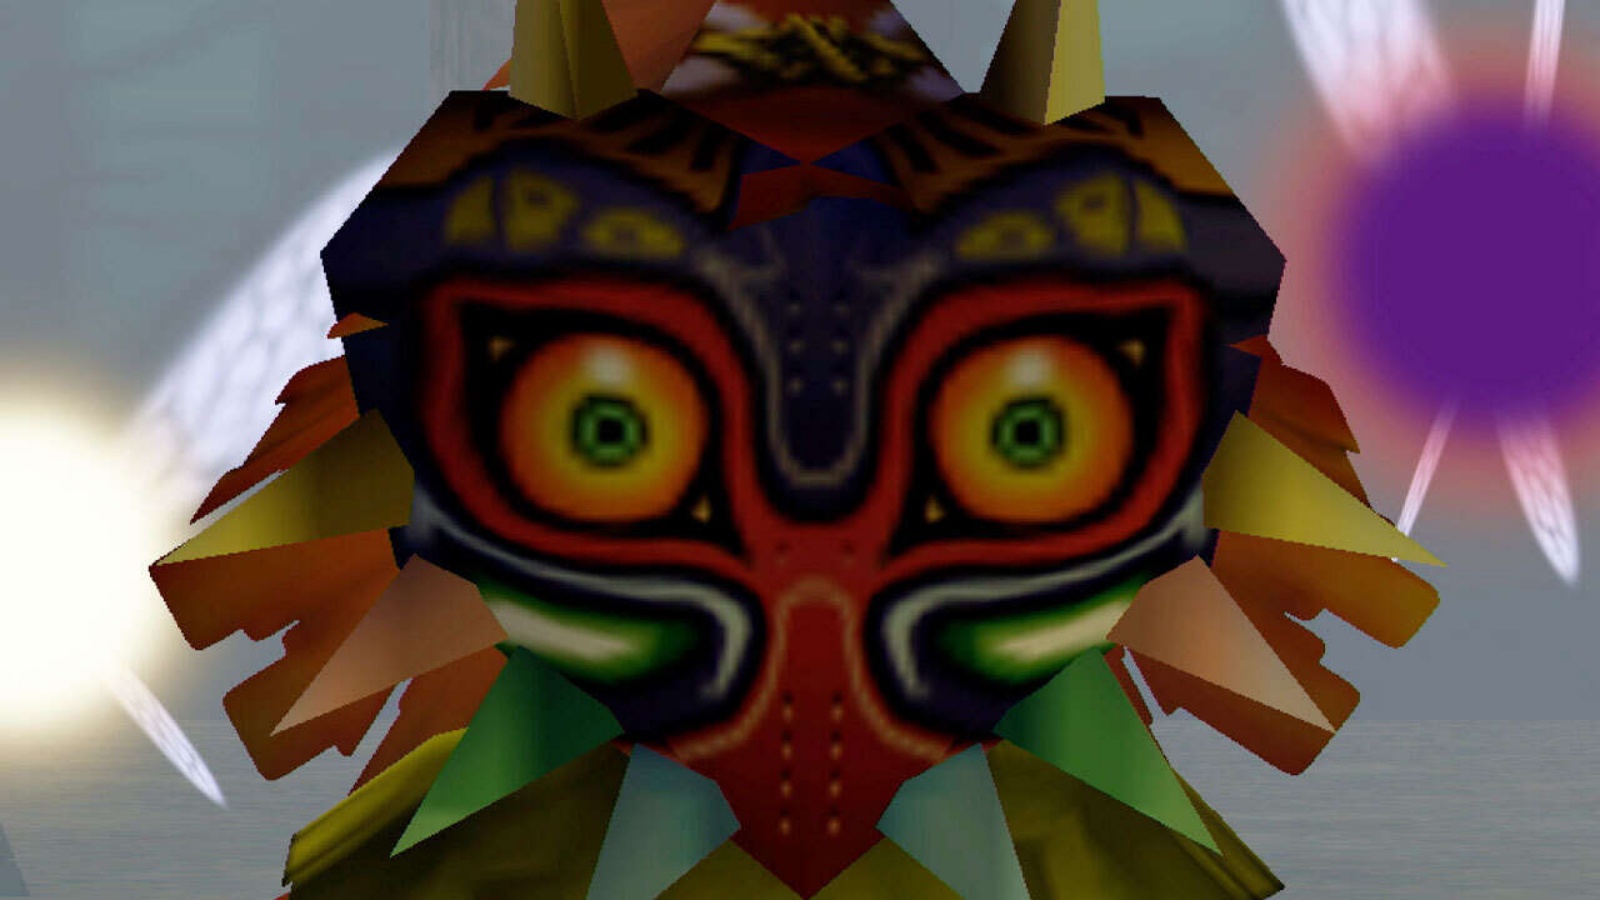 Legend of Zelda fan finds giant Majora mask in Mexican market